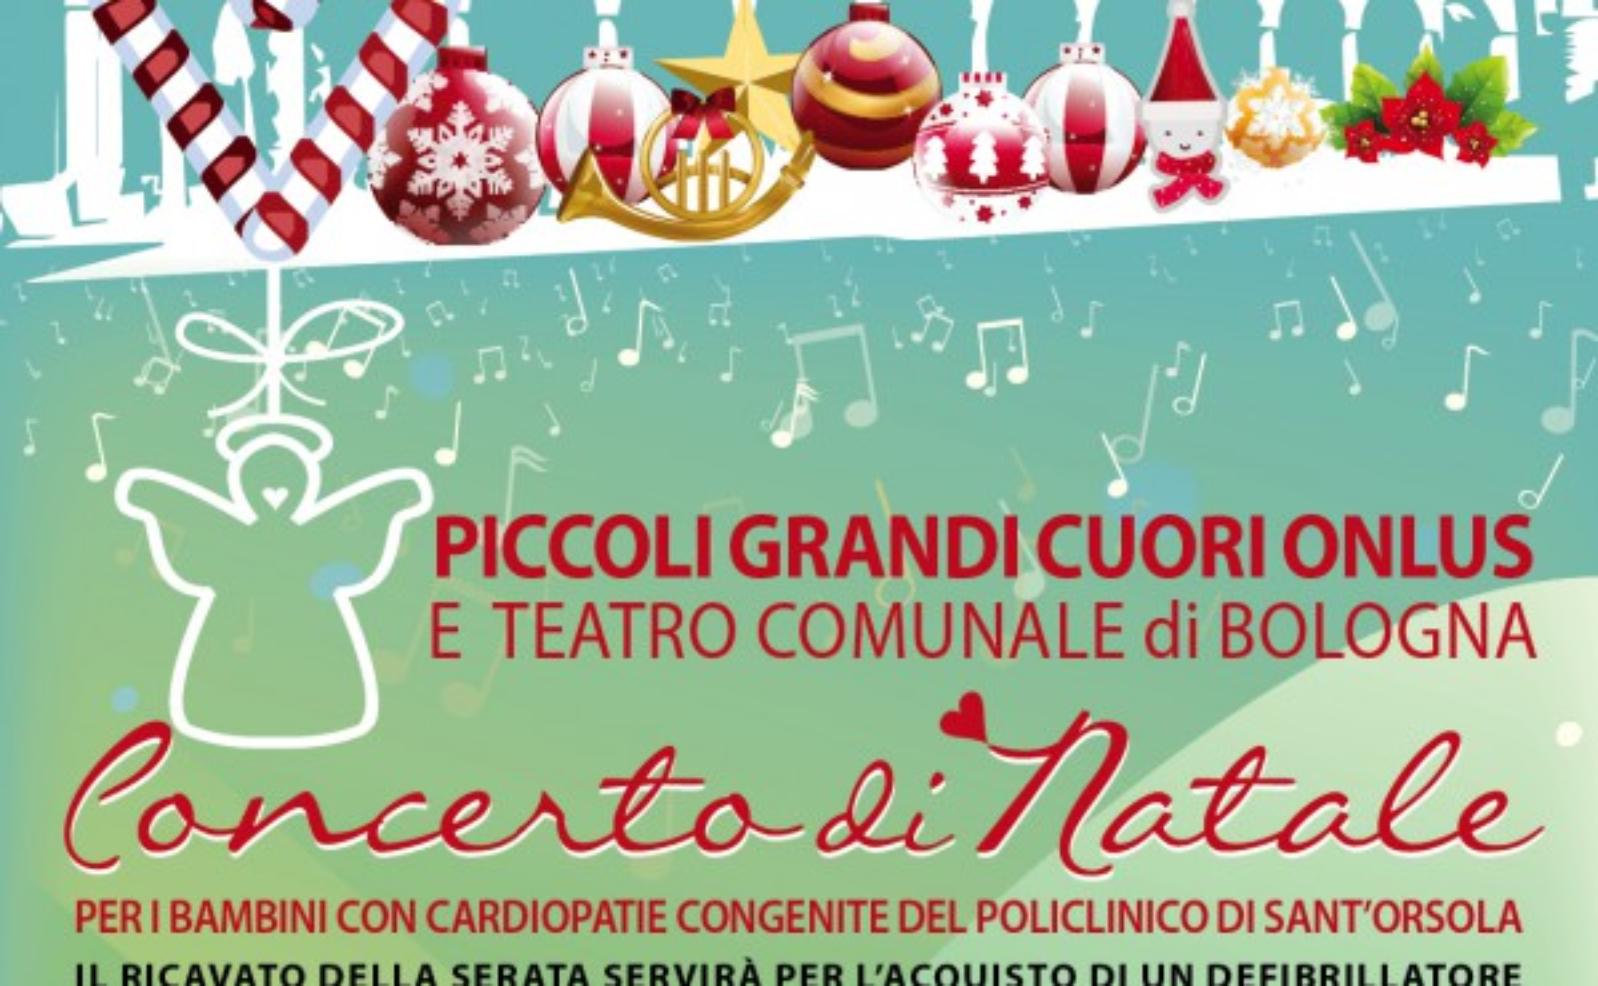 Christmas Concert Associazione Piccoli Grandi Cuori Onlus